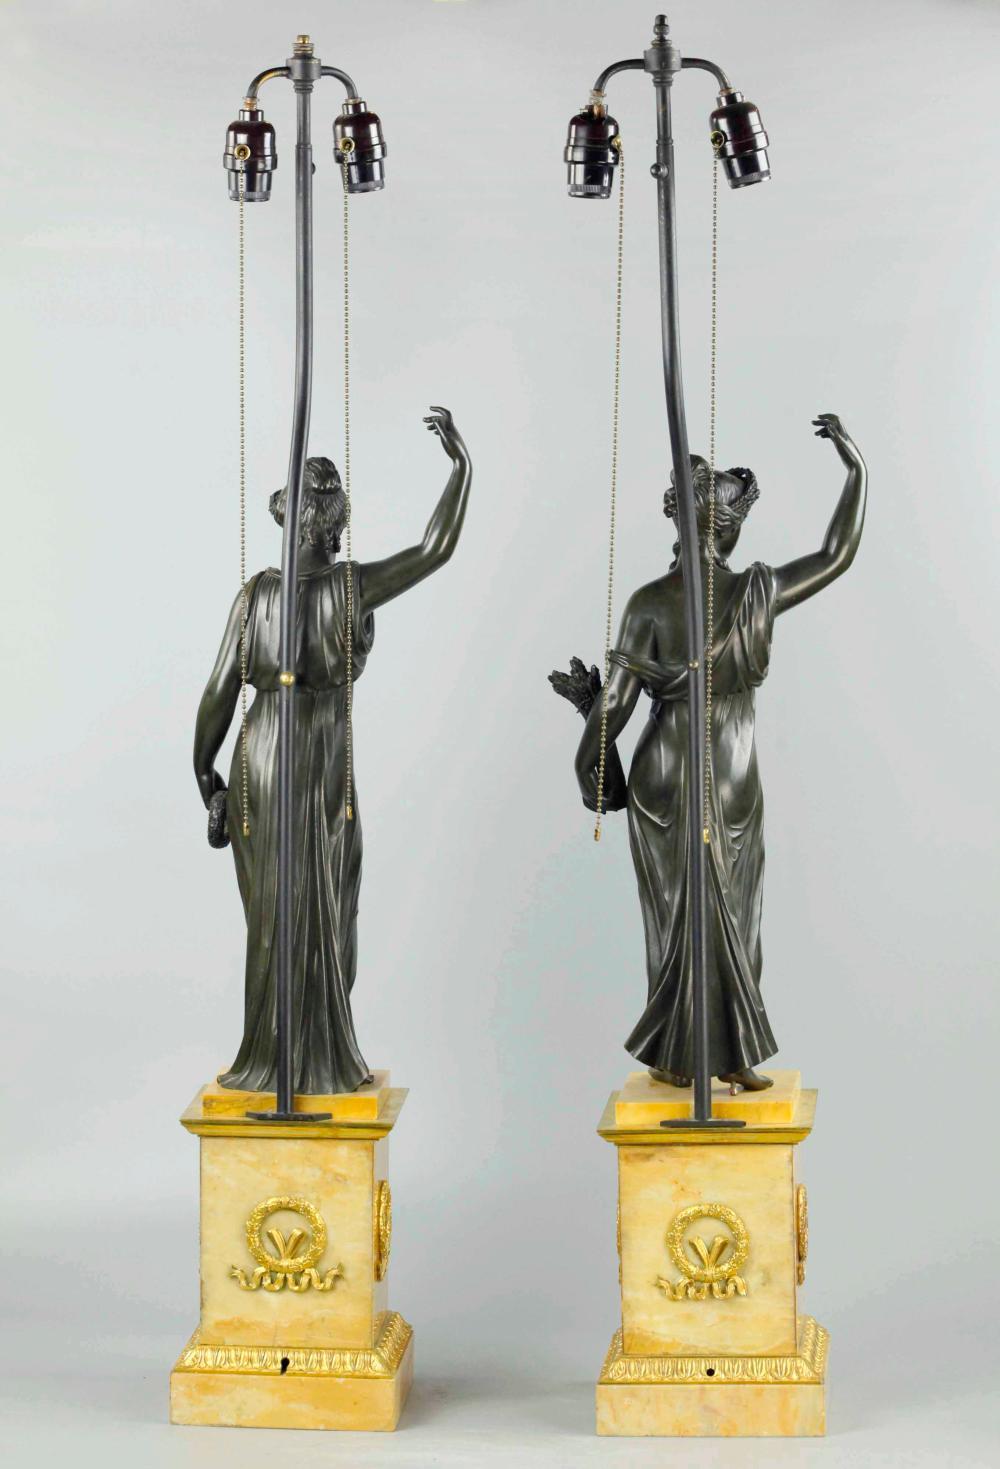 Paire de figures néoclassiques russes du XIXe siècle en bronze patiné sur socles en marbre de Sienne. Maintenant en tant que lampes. Montures en bronze doré finement moulées et bien dorées. Deux des quatre saisons. Grande échelle

Mesures :